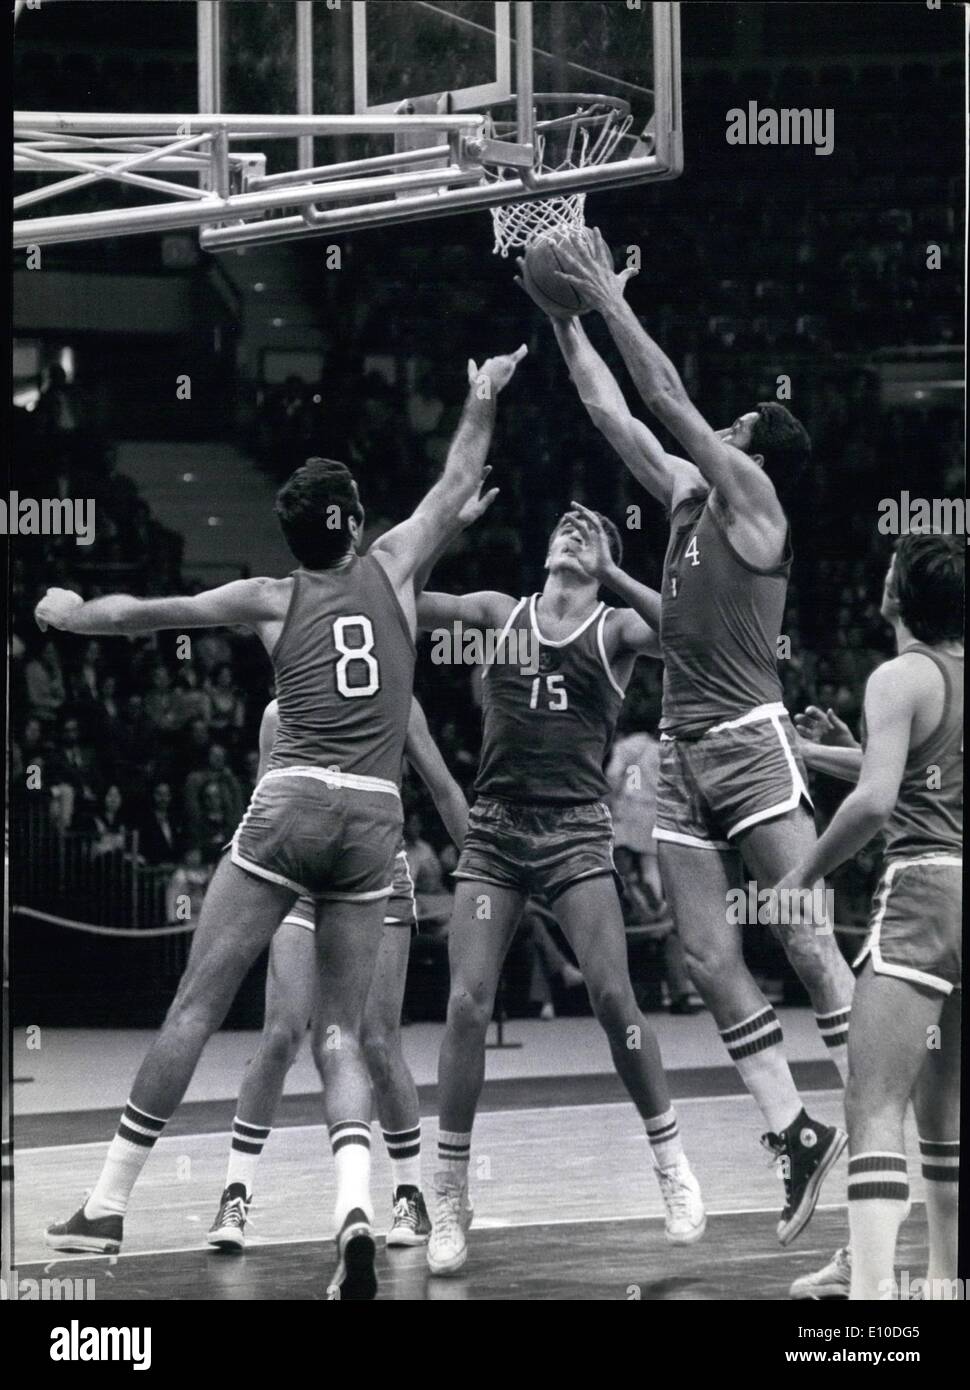 Juillet 07, 1972 - La nouvelle salle de basket-ball des Jeux Olympiques de Munich a été inauguré par plusieurs matchs de basket-ball. Les équipes étaient d'URSS, Tchécoslovaquie, l'Italie et l'Allemagne de l'Ouest. Photo montre une attaque de l'équipe soviétique. Banque D'Images